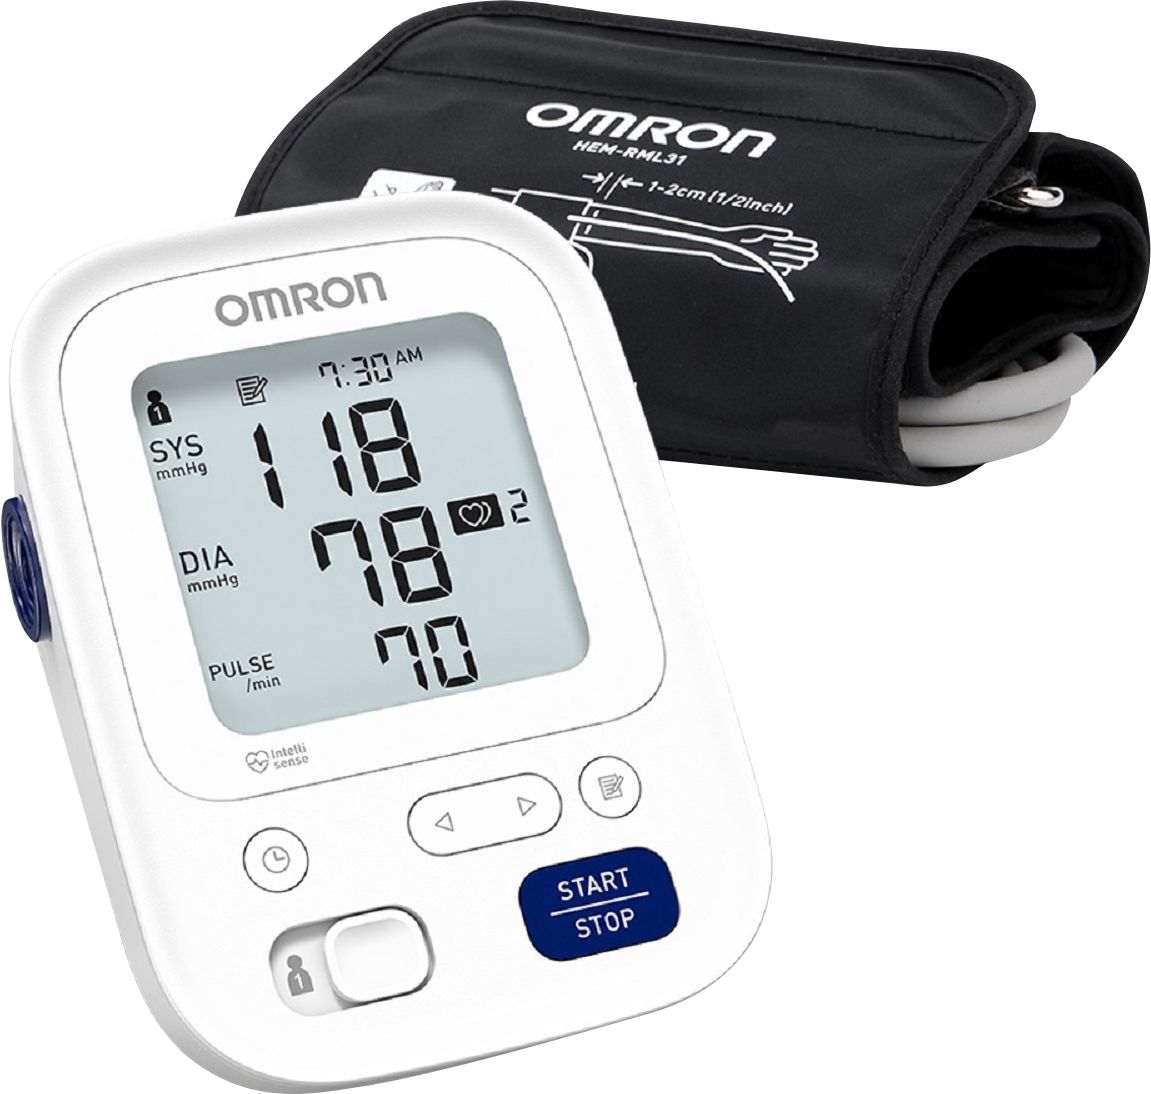 Omron Blood Pressure Monitor 1 Ea